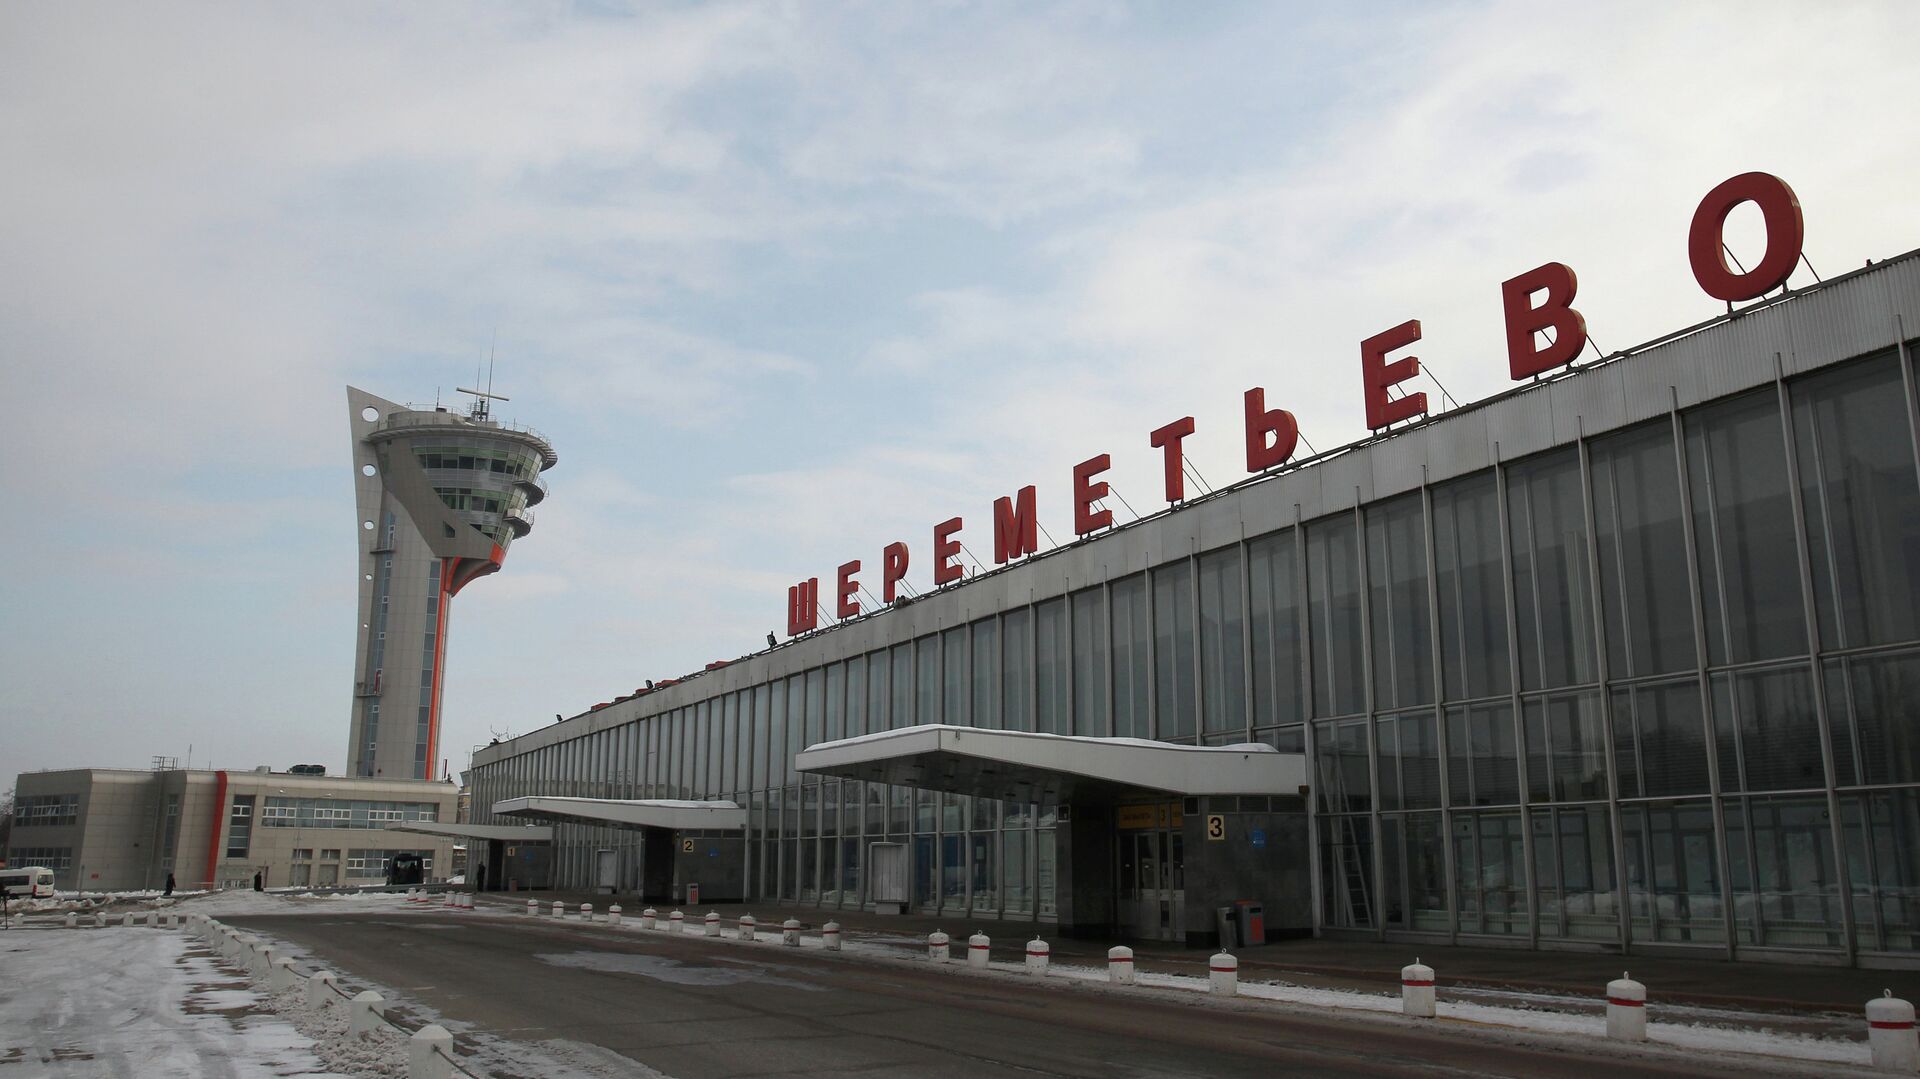 московский аэропорт шереметьево